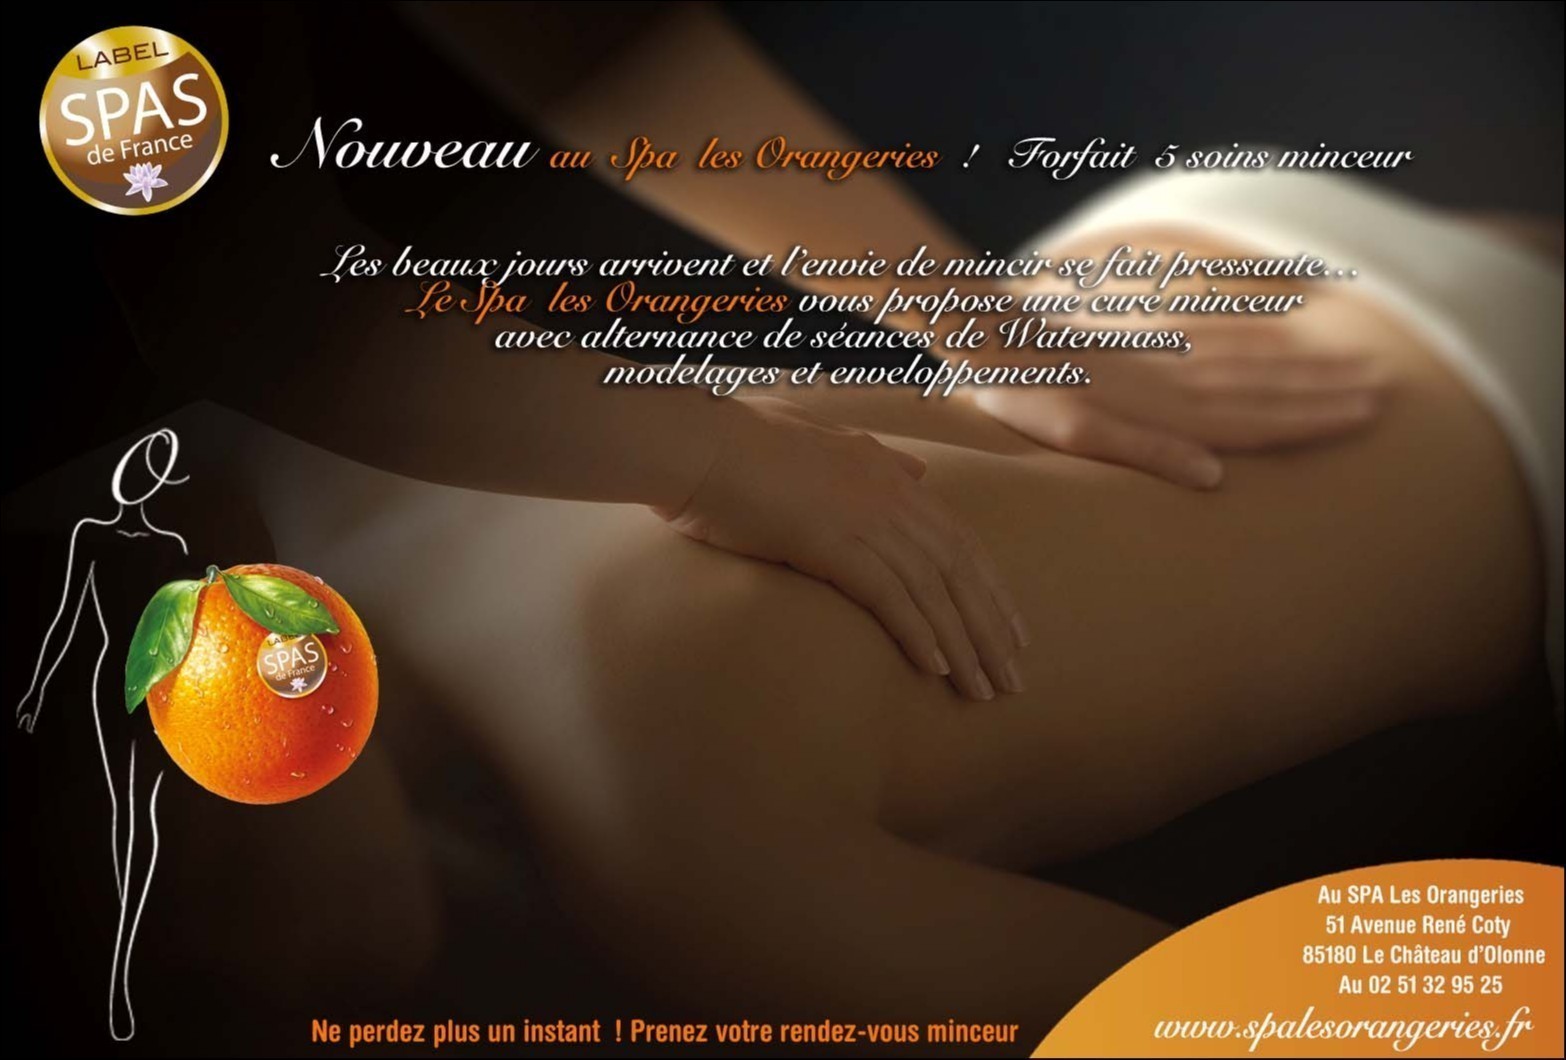 SPA LES ORANGERIES - OCA des Sables d'Olonne : Massage Sensoriel by D. GRAND